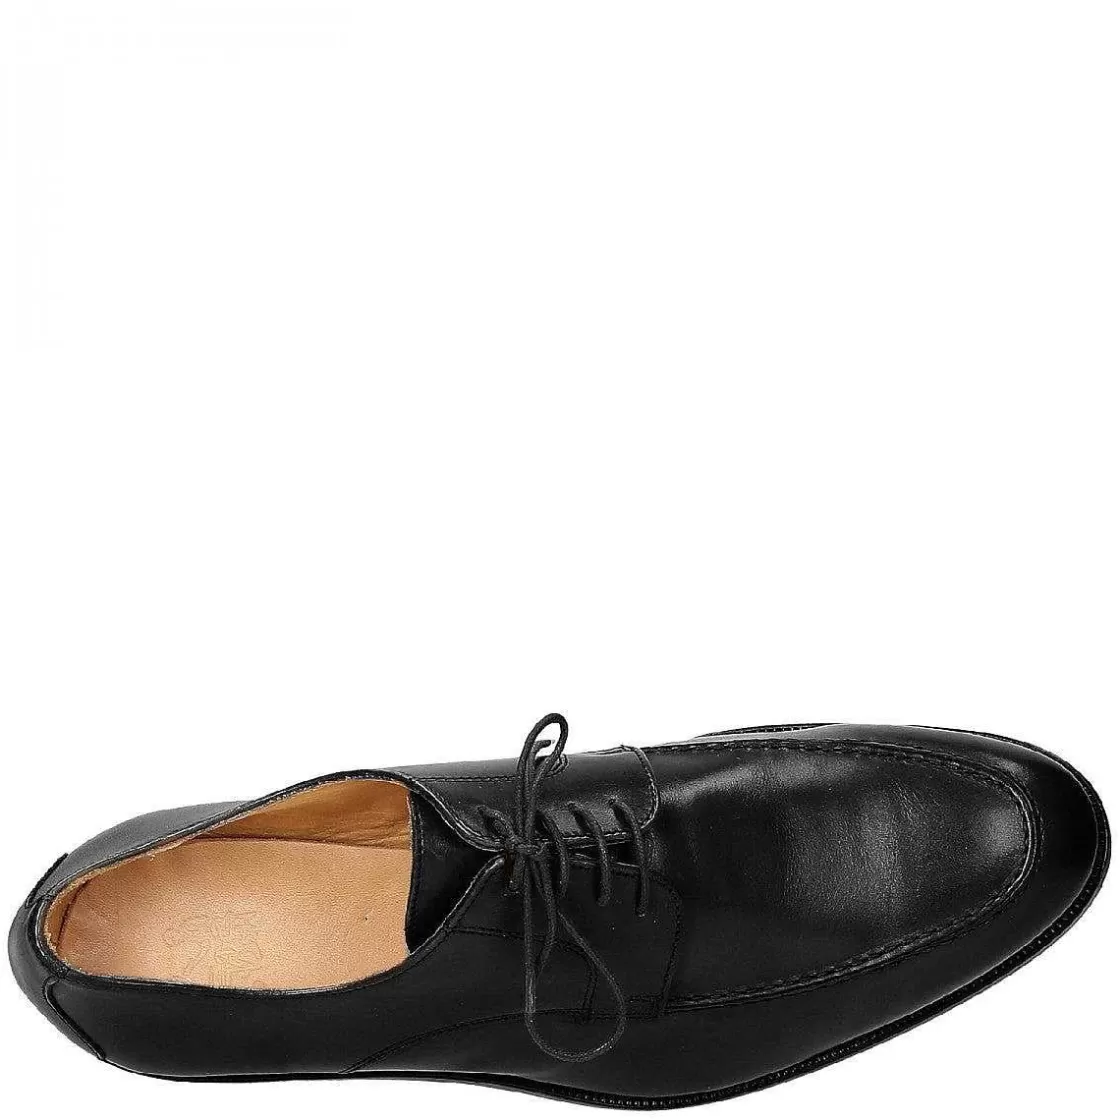 Leonardo Elegant Men'S Shoes In Black Leather Handmade Hot